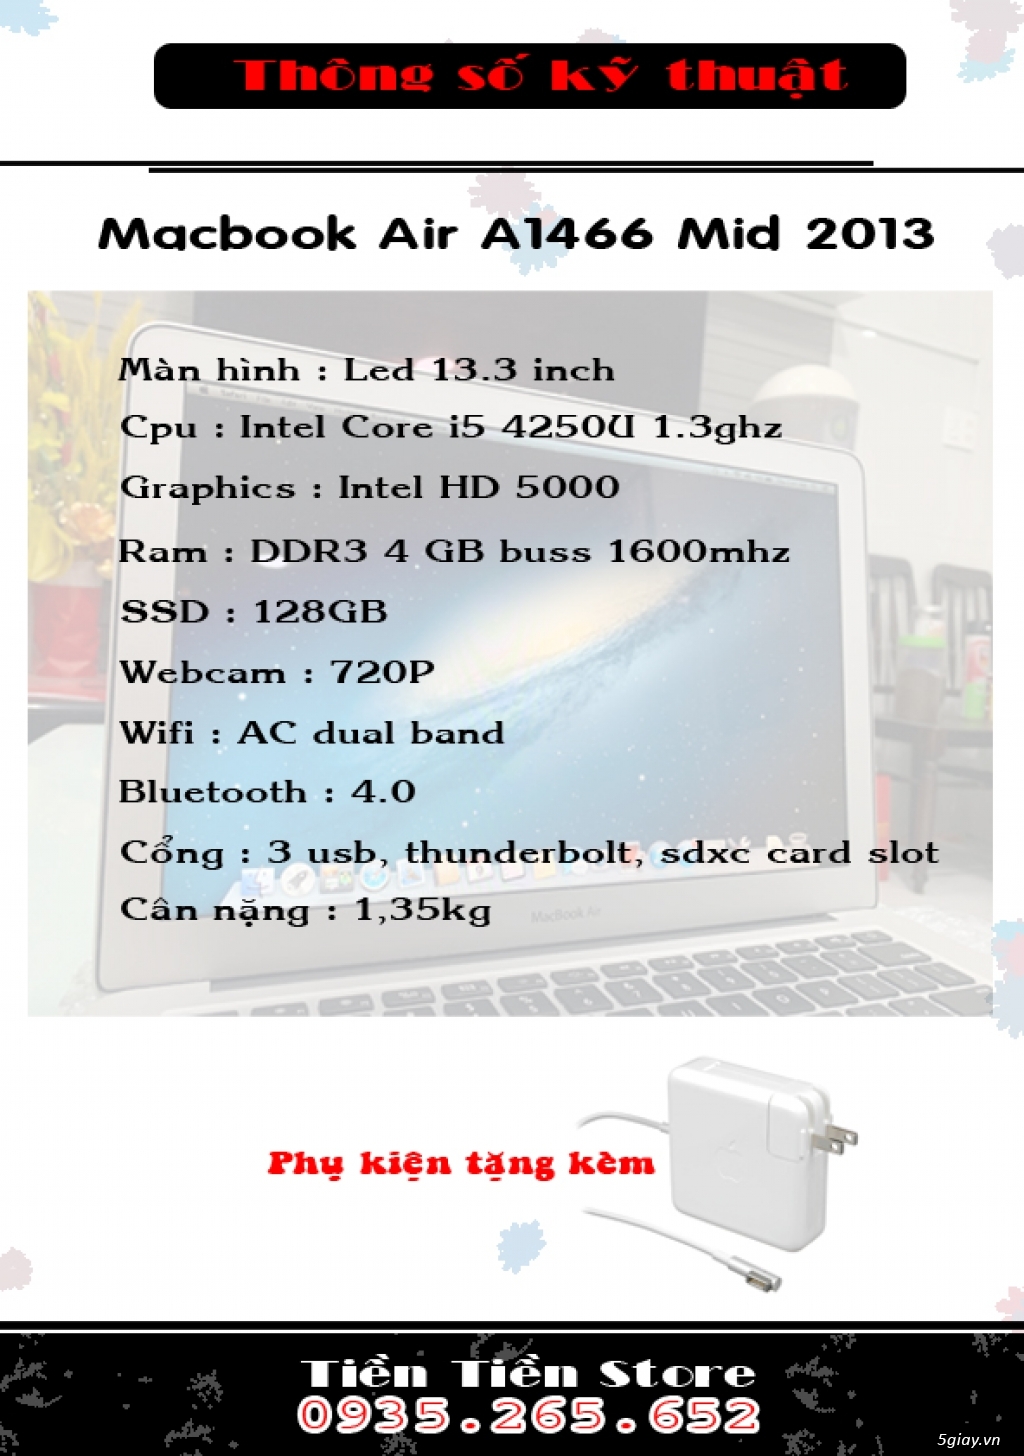 Macbook Air A1466 mid 2013 core i5  hàng USA đẹp long lanh giá rẻ - 4